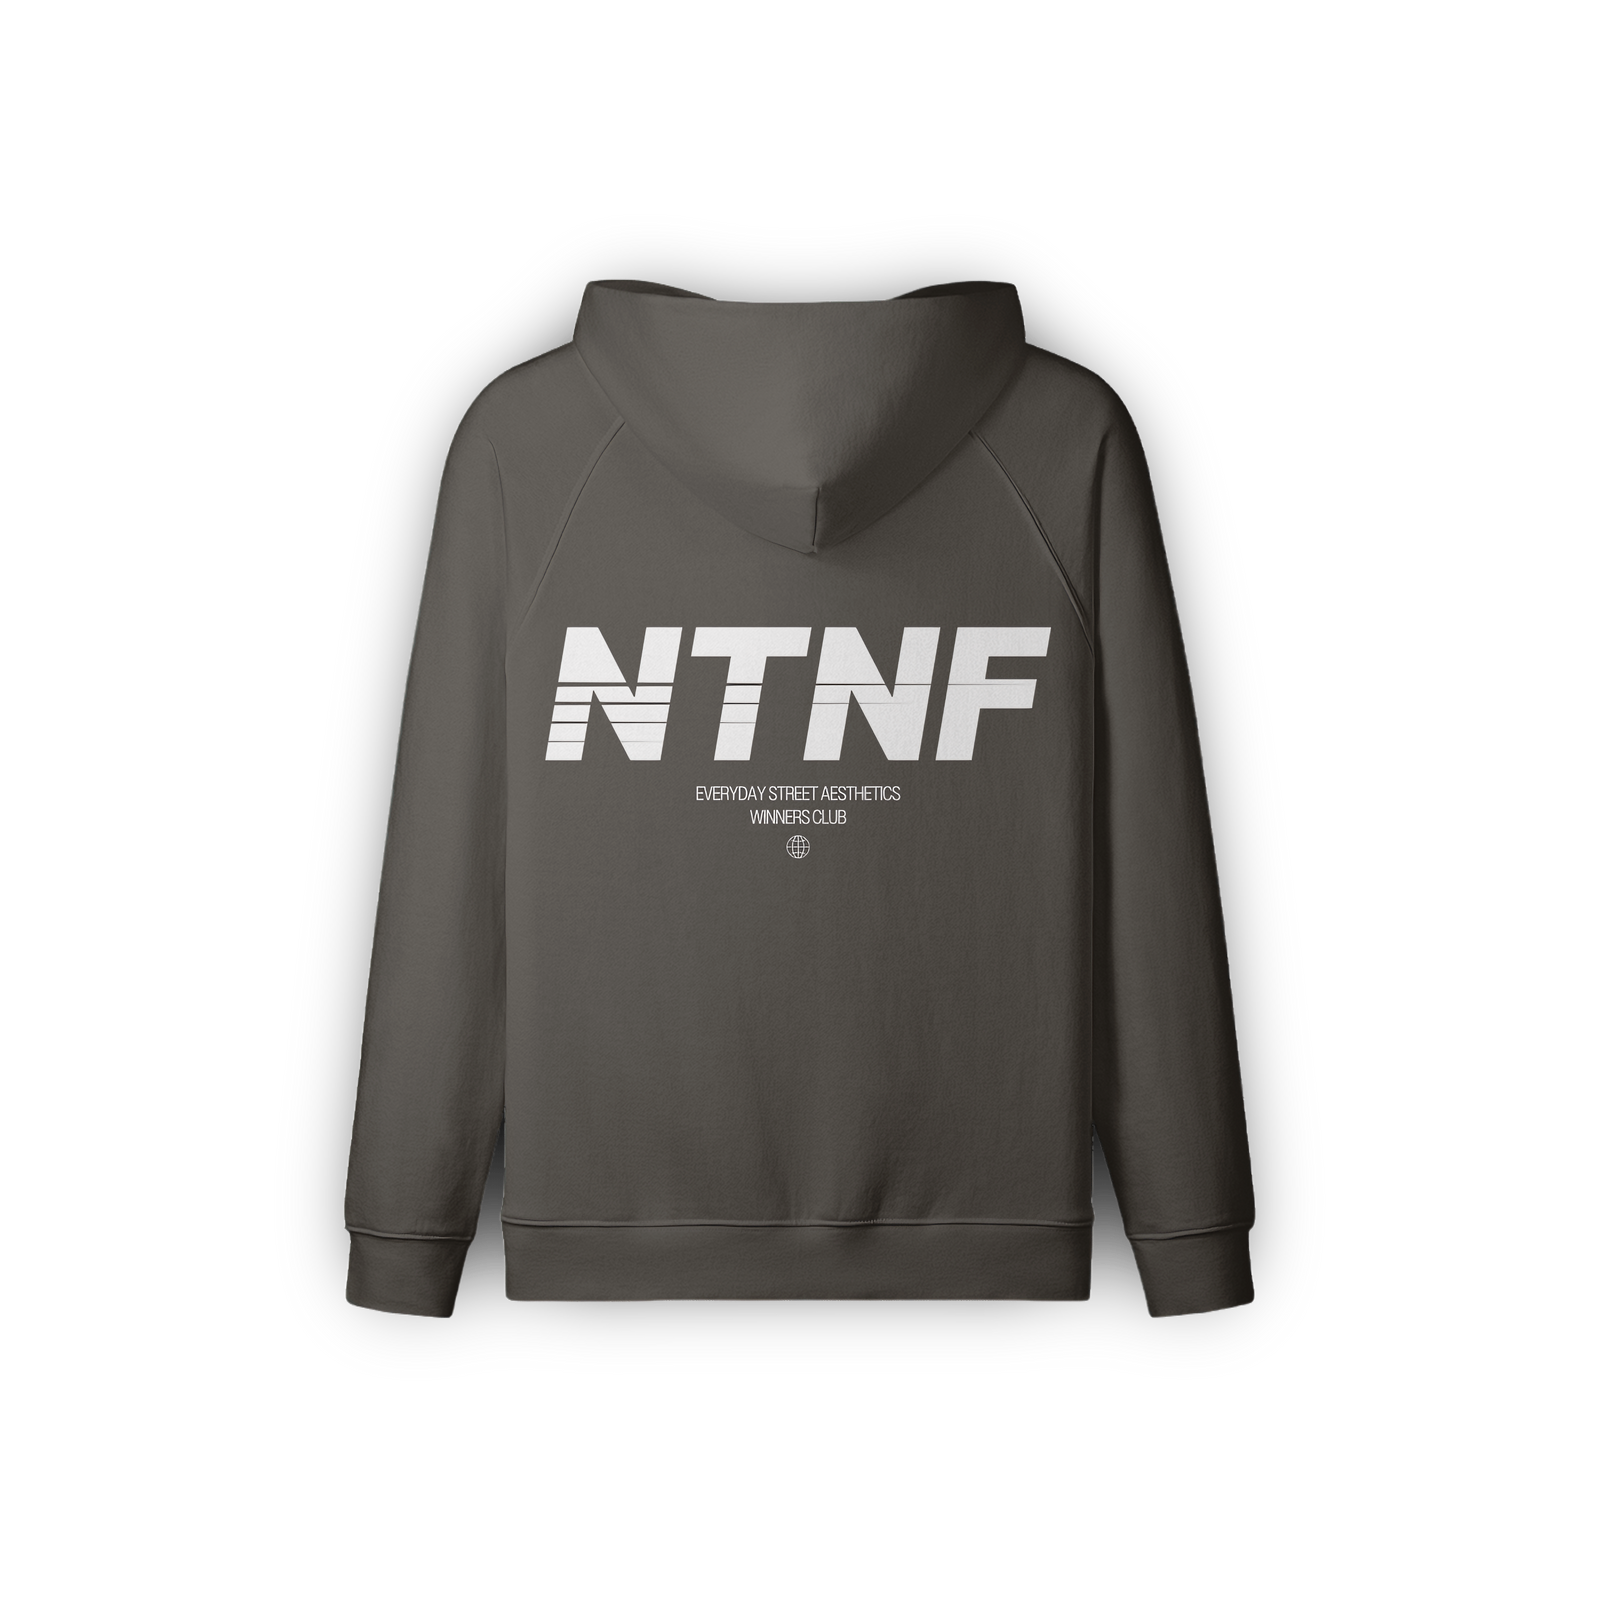 Fleece-Lined Zip Hoodie "NTNF"